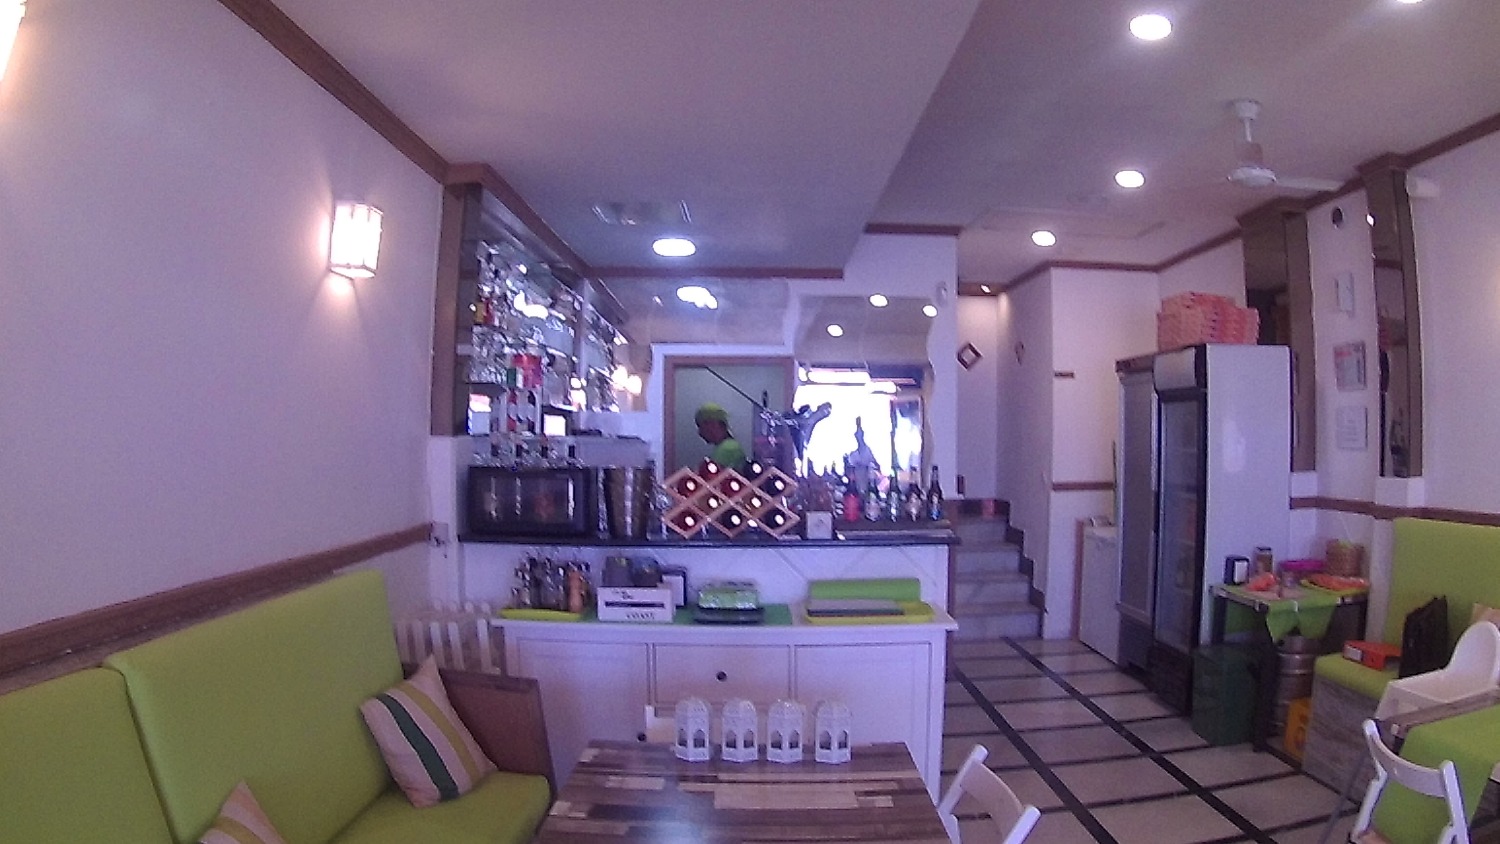 Traspaso Cafe Bar en Benalmádena Costa del Sol - Frente Playa - con HABITACION PROPIETARIO